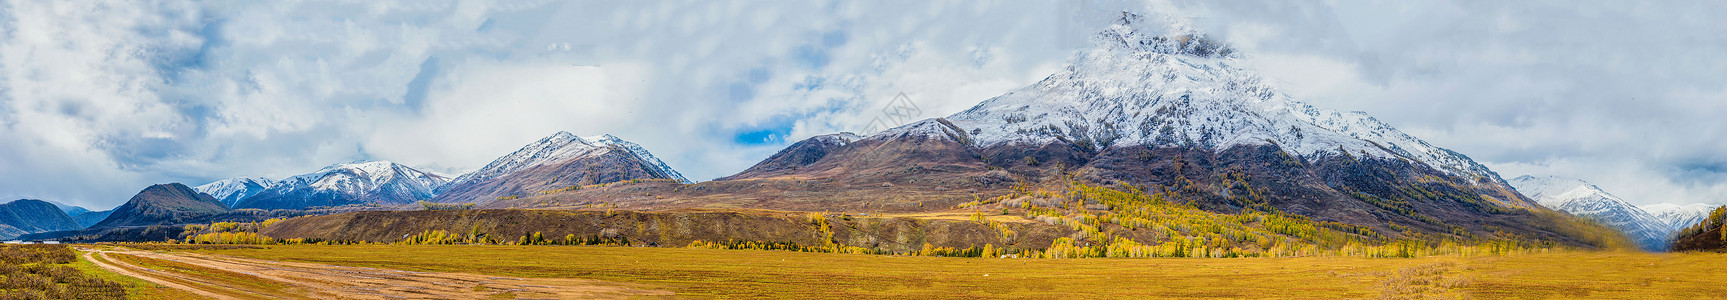 雪花轻盈北疆秋色雪山全景背景